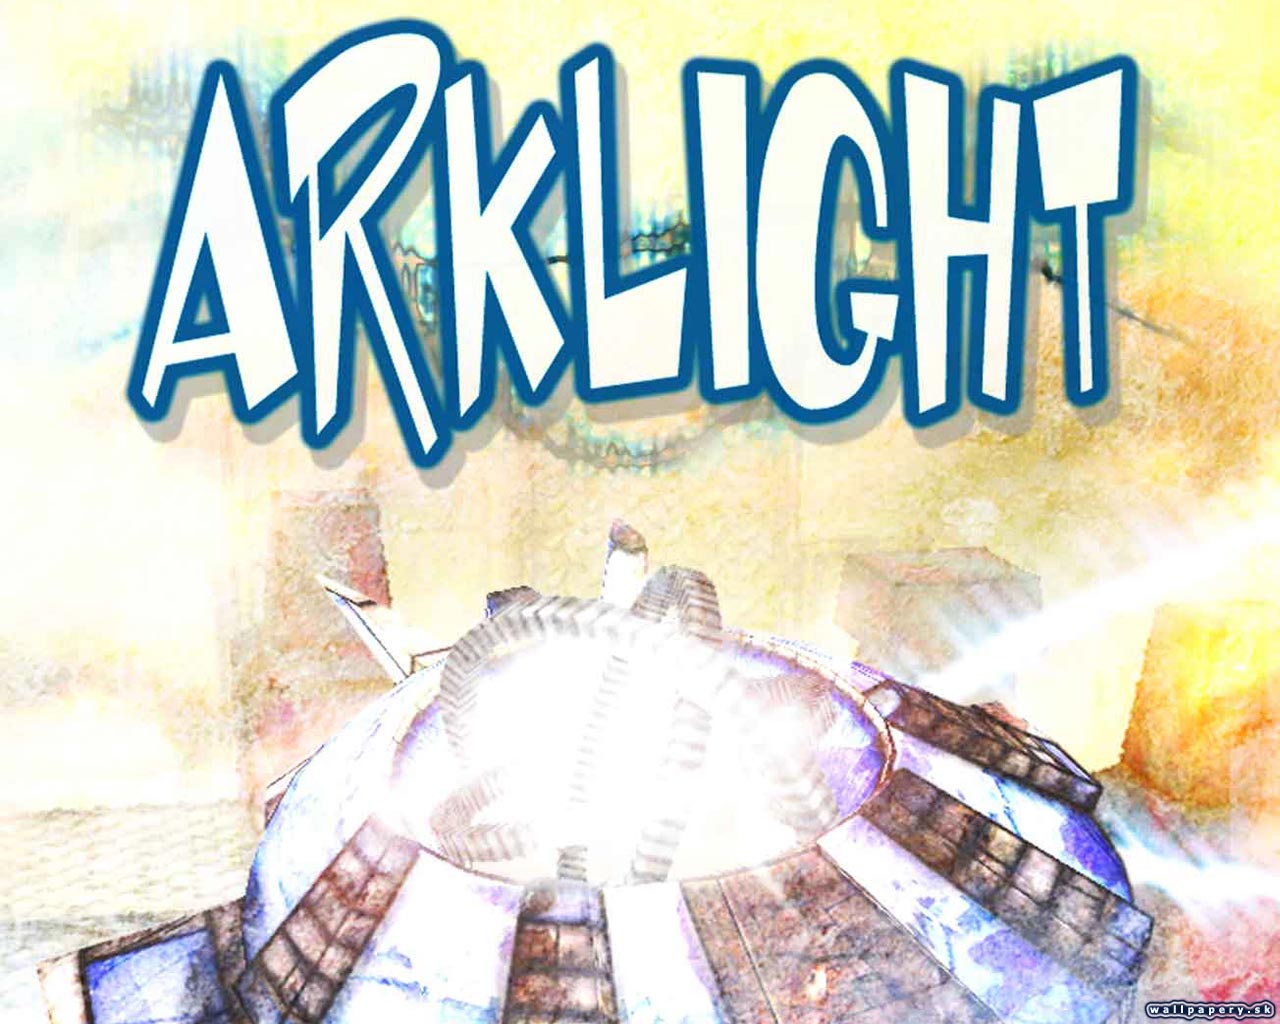 ArkLight - wallpaper 4